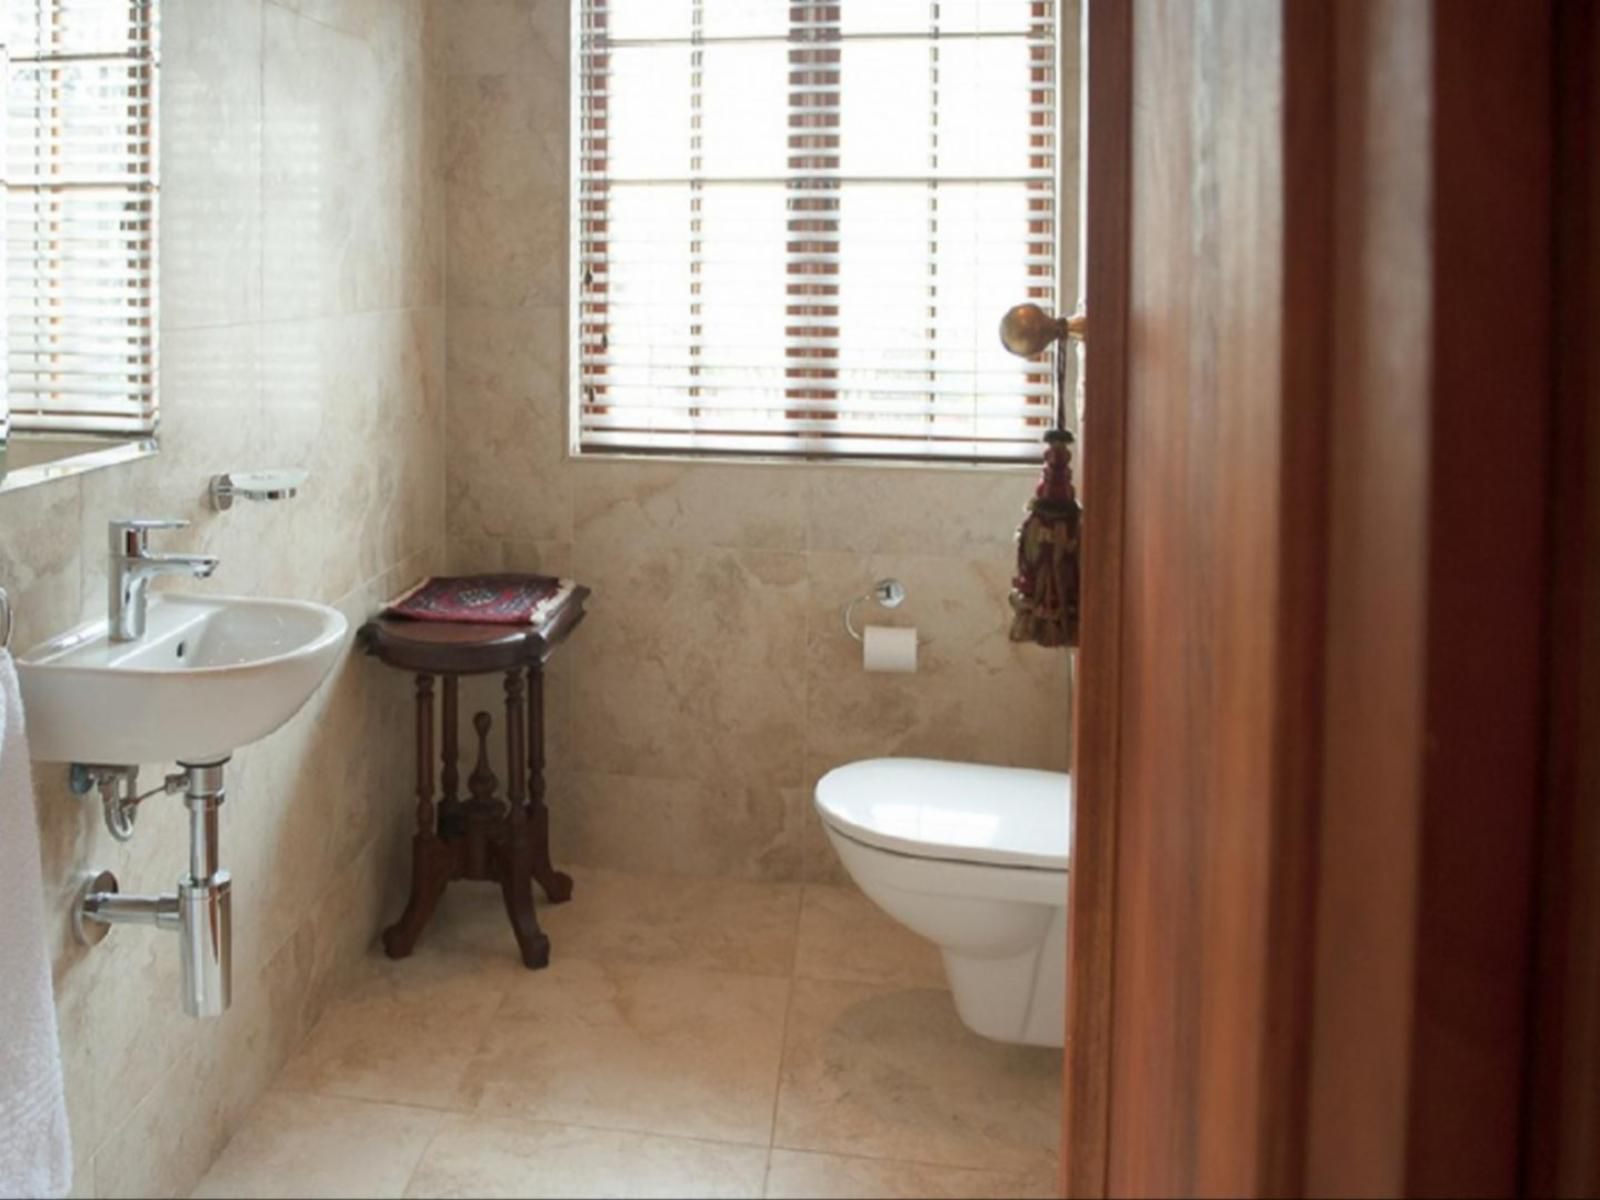 Blaauwheim Guest House Jonkershoogte Somerset West Western Cape South Africa Bathroom